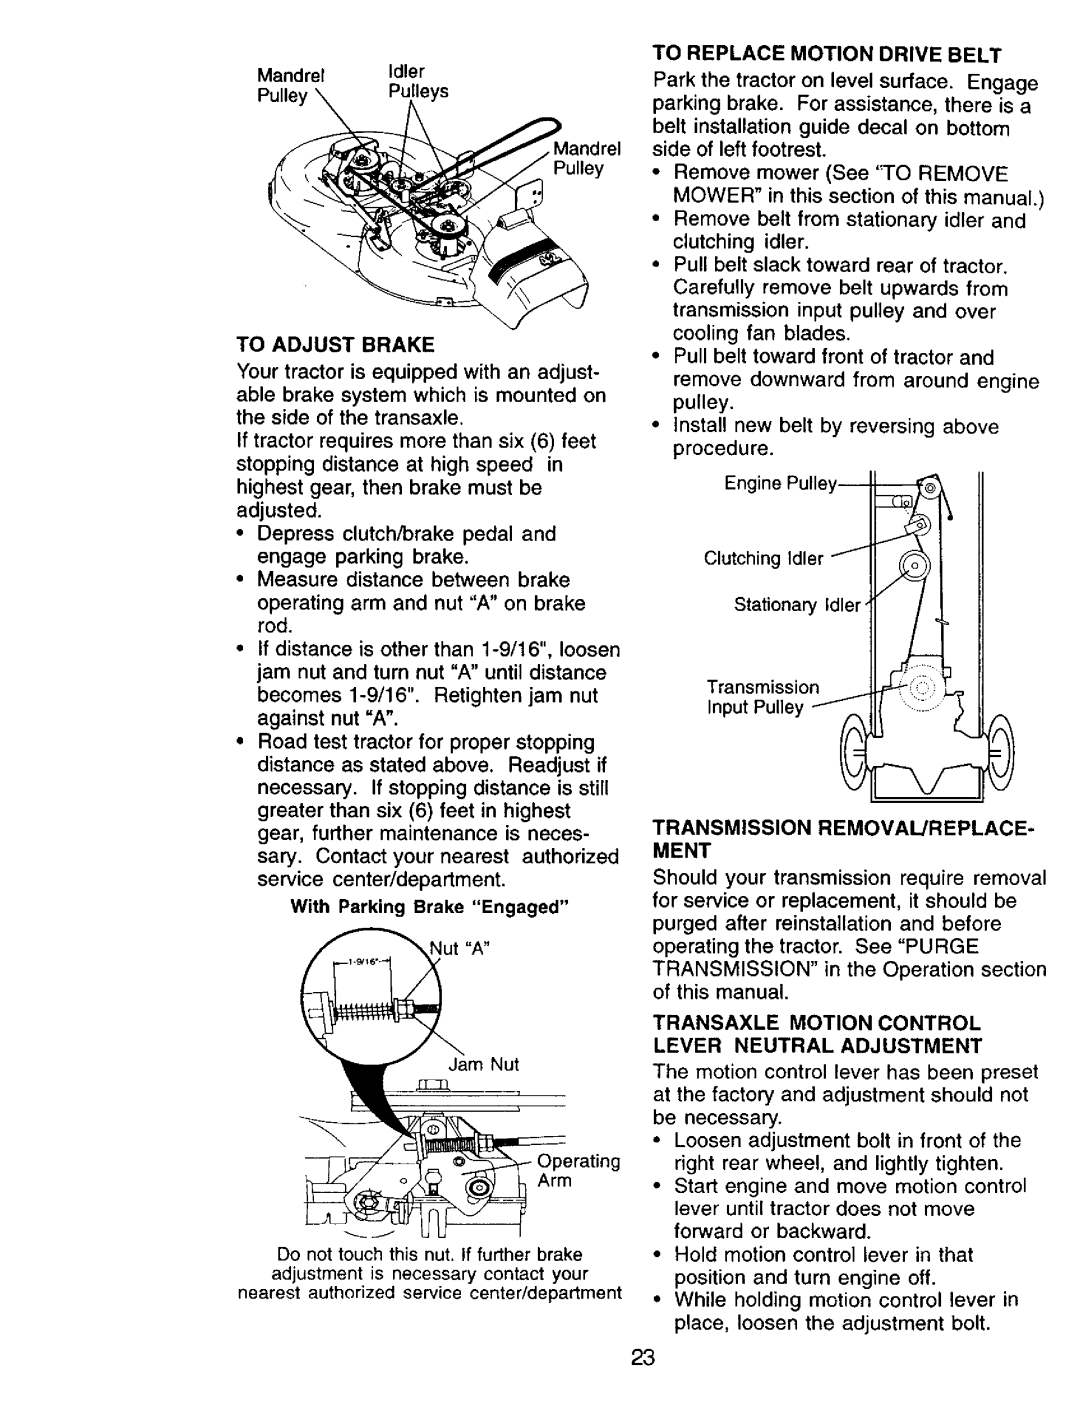 Craftsman 917.271142 manual To Adjust Brake 